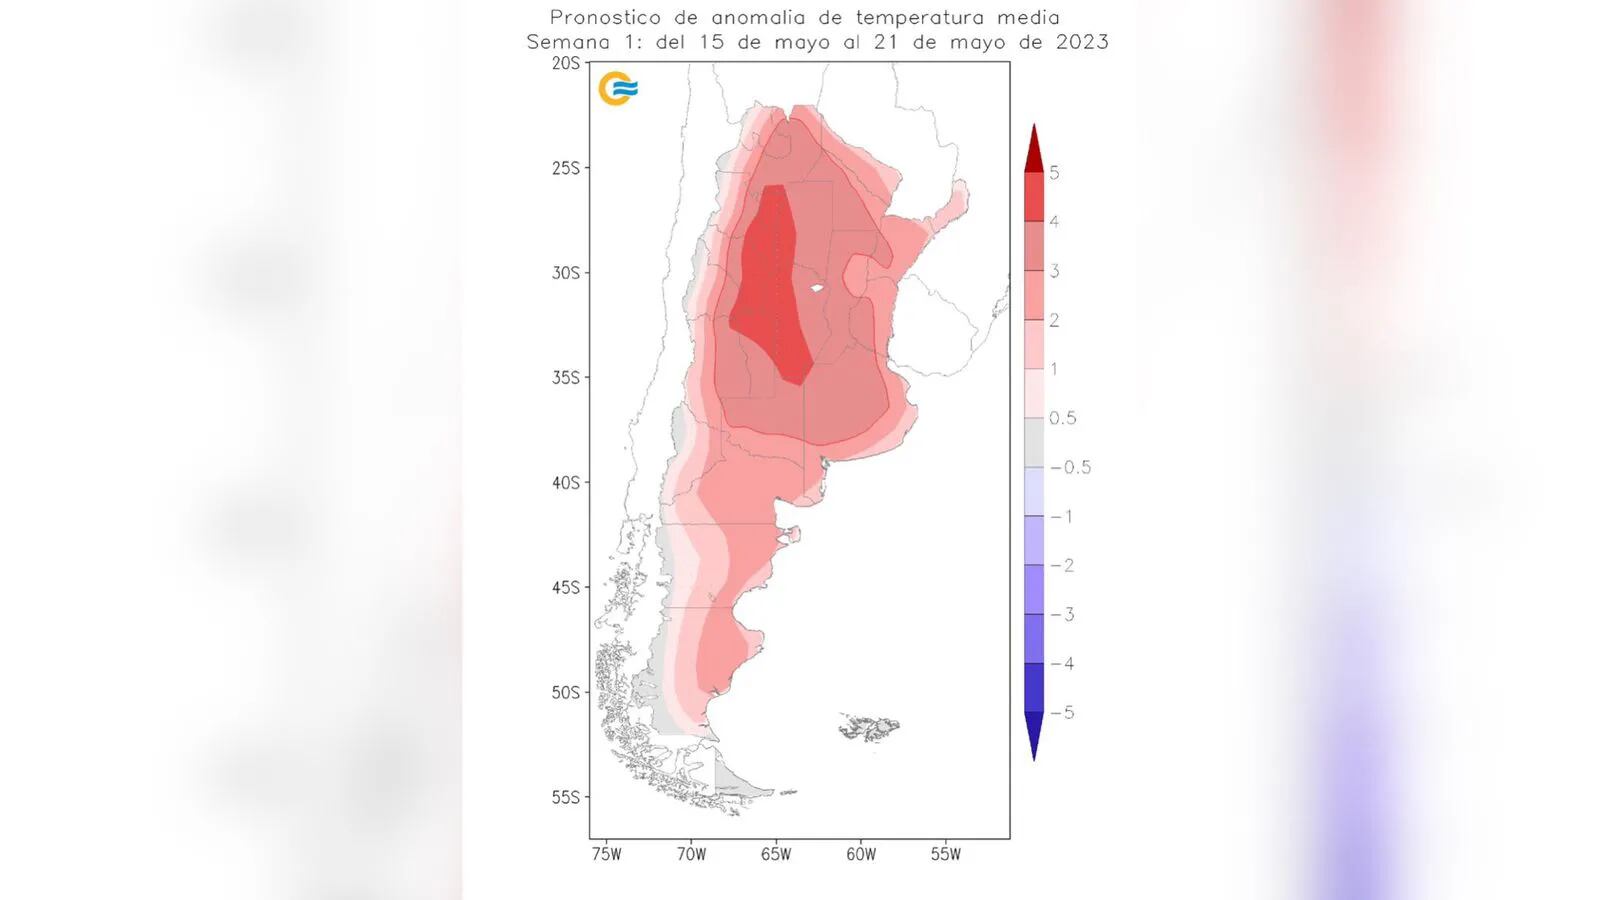 El 2023 podría ser uno de los años más cálidos en Argentina: “Anomalía de temperatura”